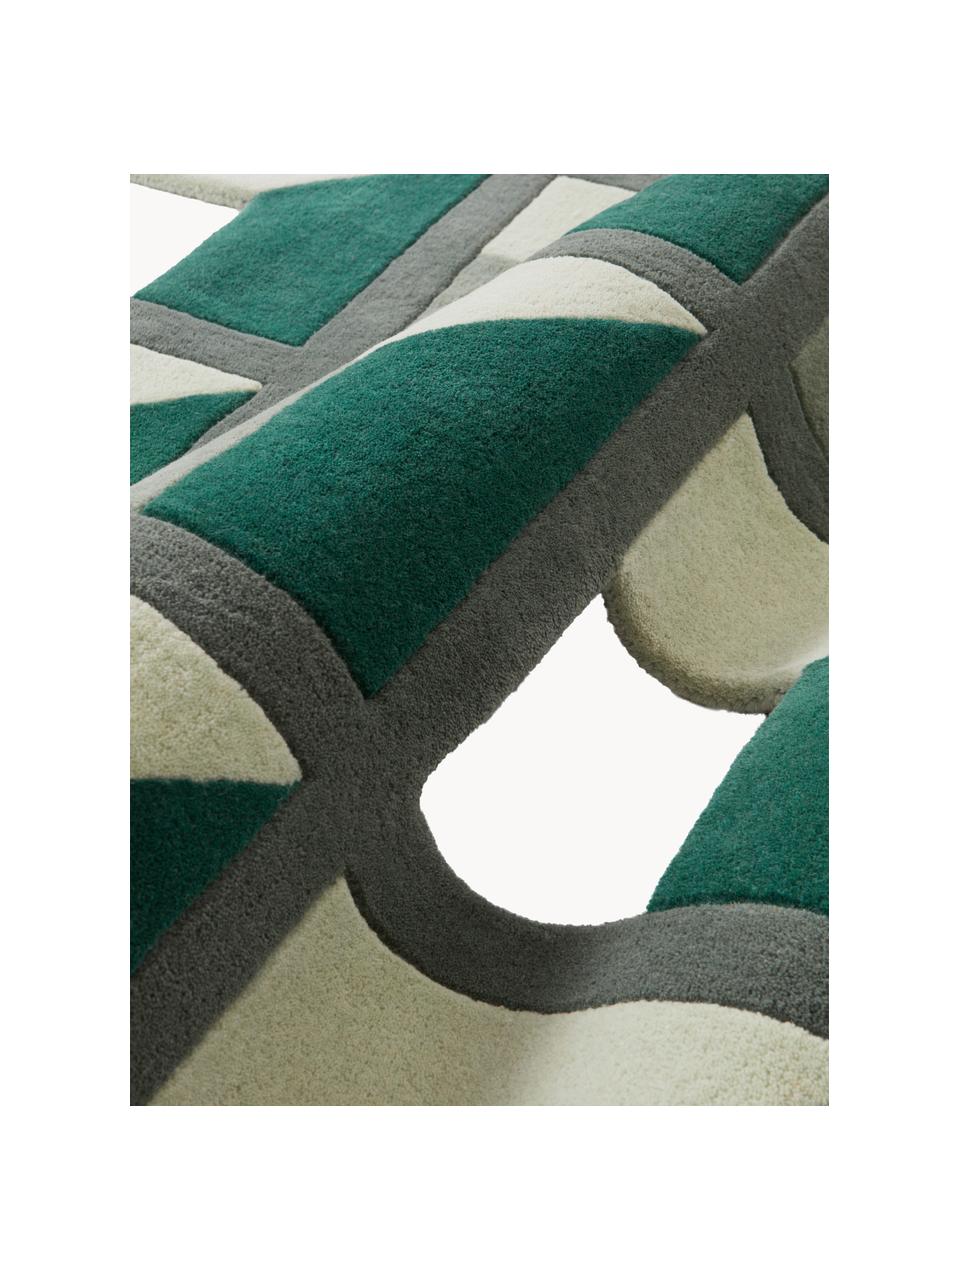 Ručně tkaný vlněný koberec Agon, 100 % vlna

V prvních týdnech používání vlněných koberců se může objevit charakteristický jev uvolňování vláken, který po několika týdnech používání ustane., Odstíny zelené, bílá, Š 200 cm, D 300 cm (velikost L)